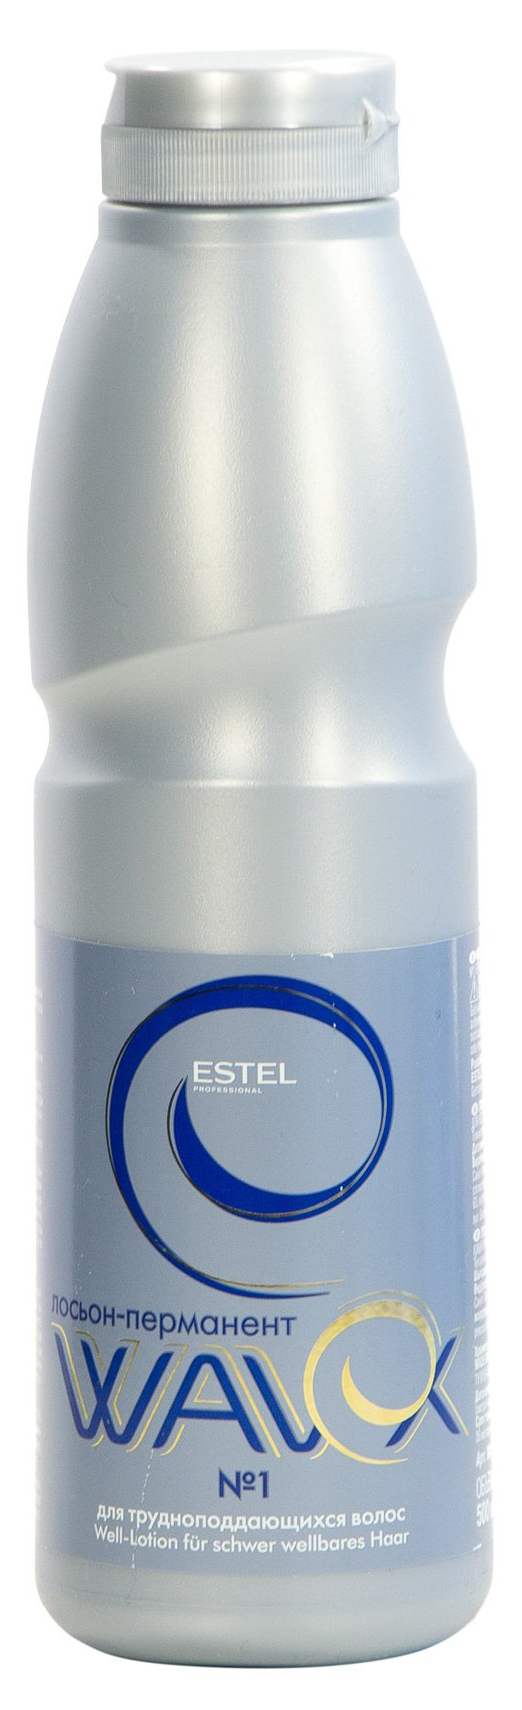 Лосьон-перманент Estel Wavex 500 мл №1 estel professional набор для химической завивки для трудноподдающихся волос wavex